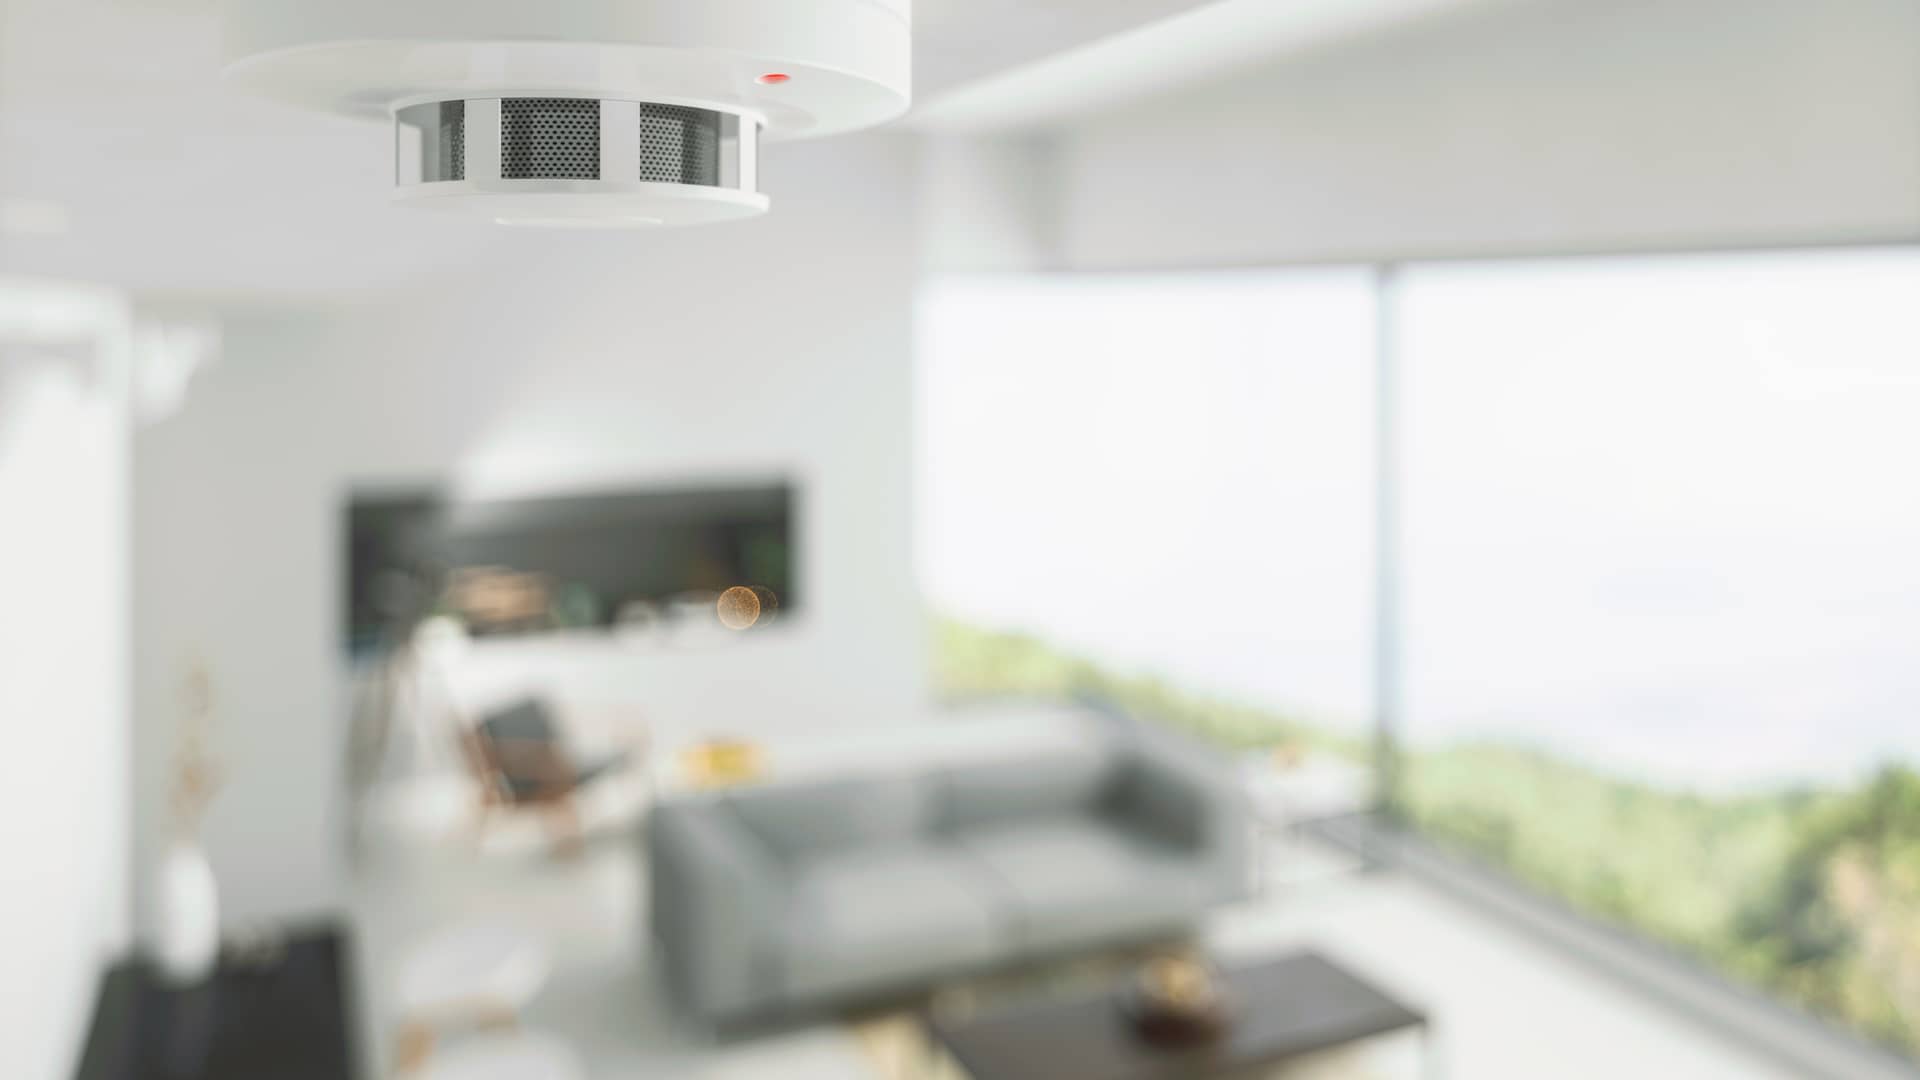 Sensores de alarma de securitas direct instalados en vivienda